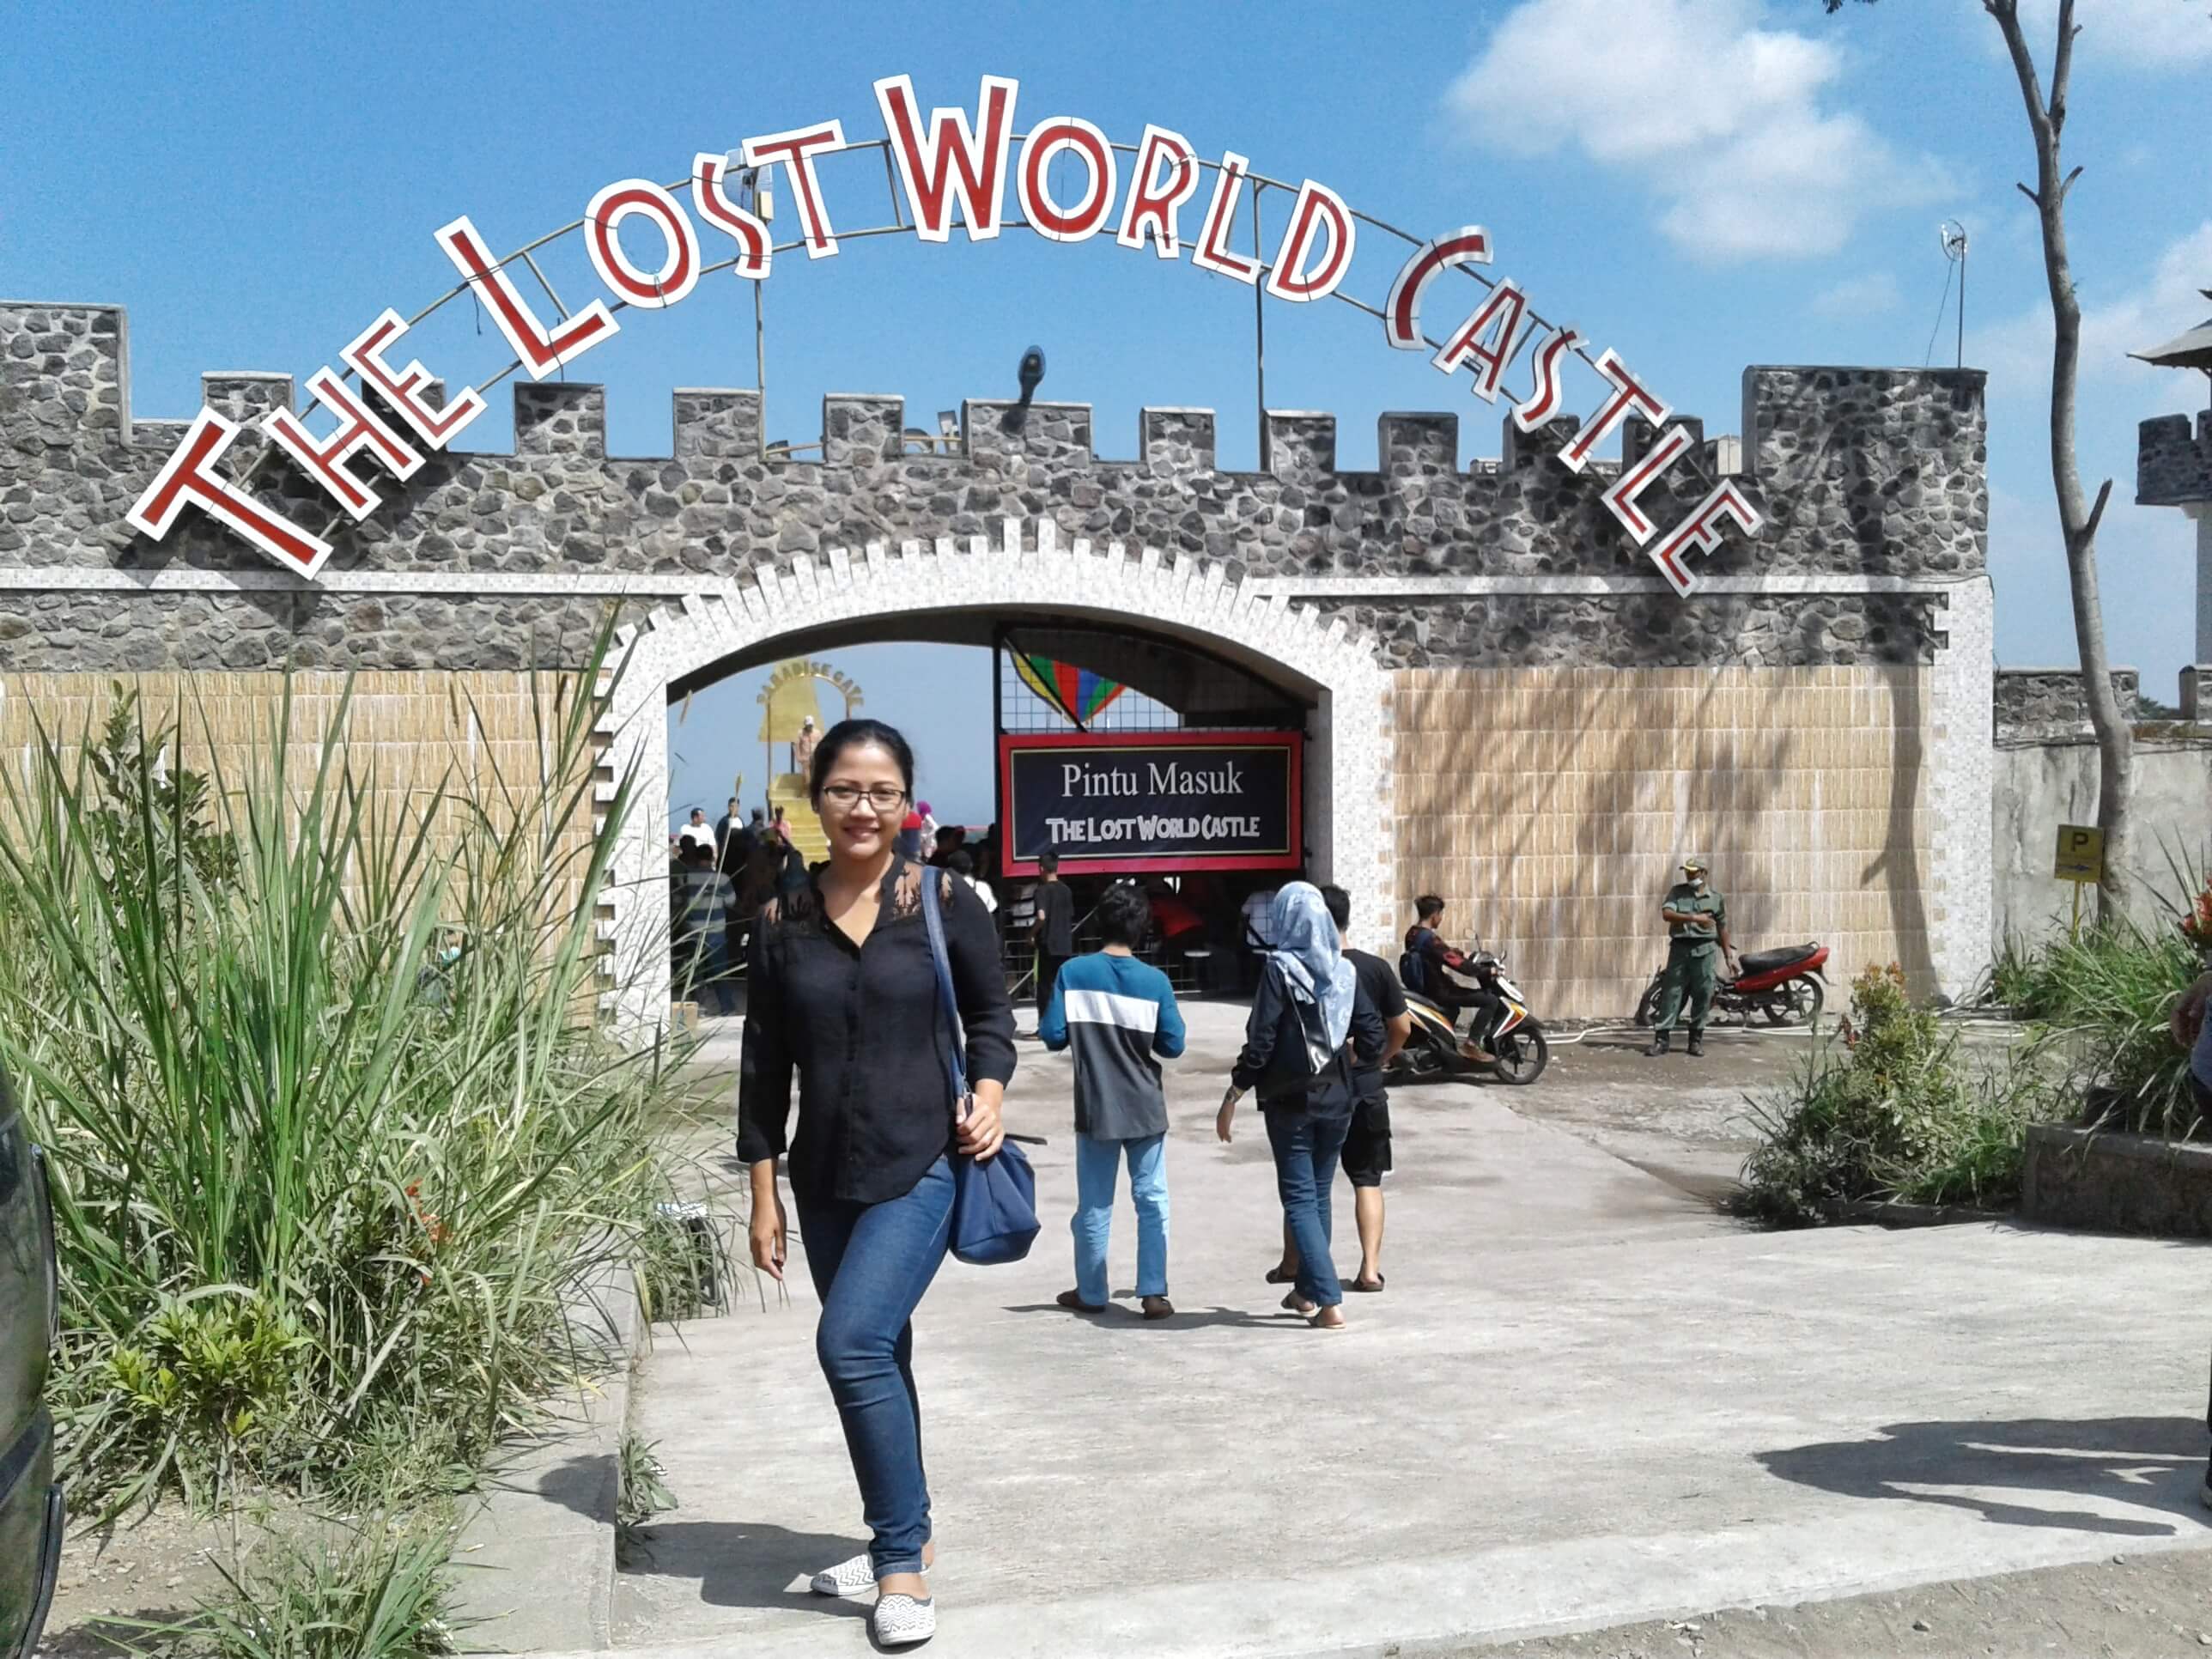 The Lost World Castle, Destinasi Wisata Jogja yang Cocok untuk Kamu yang Hobi Selfie